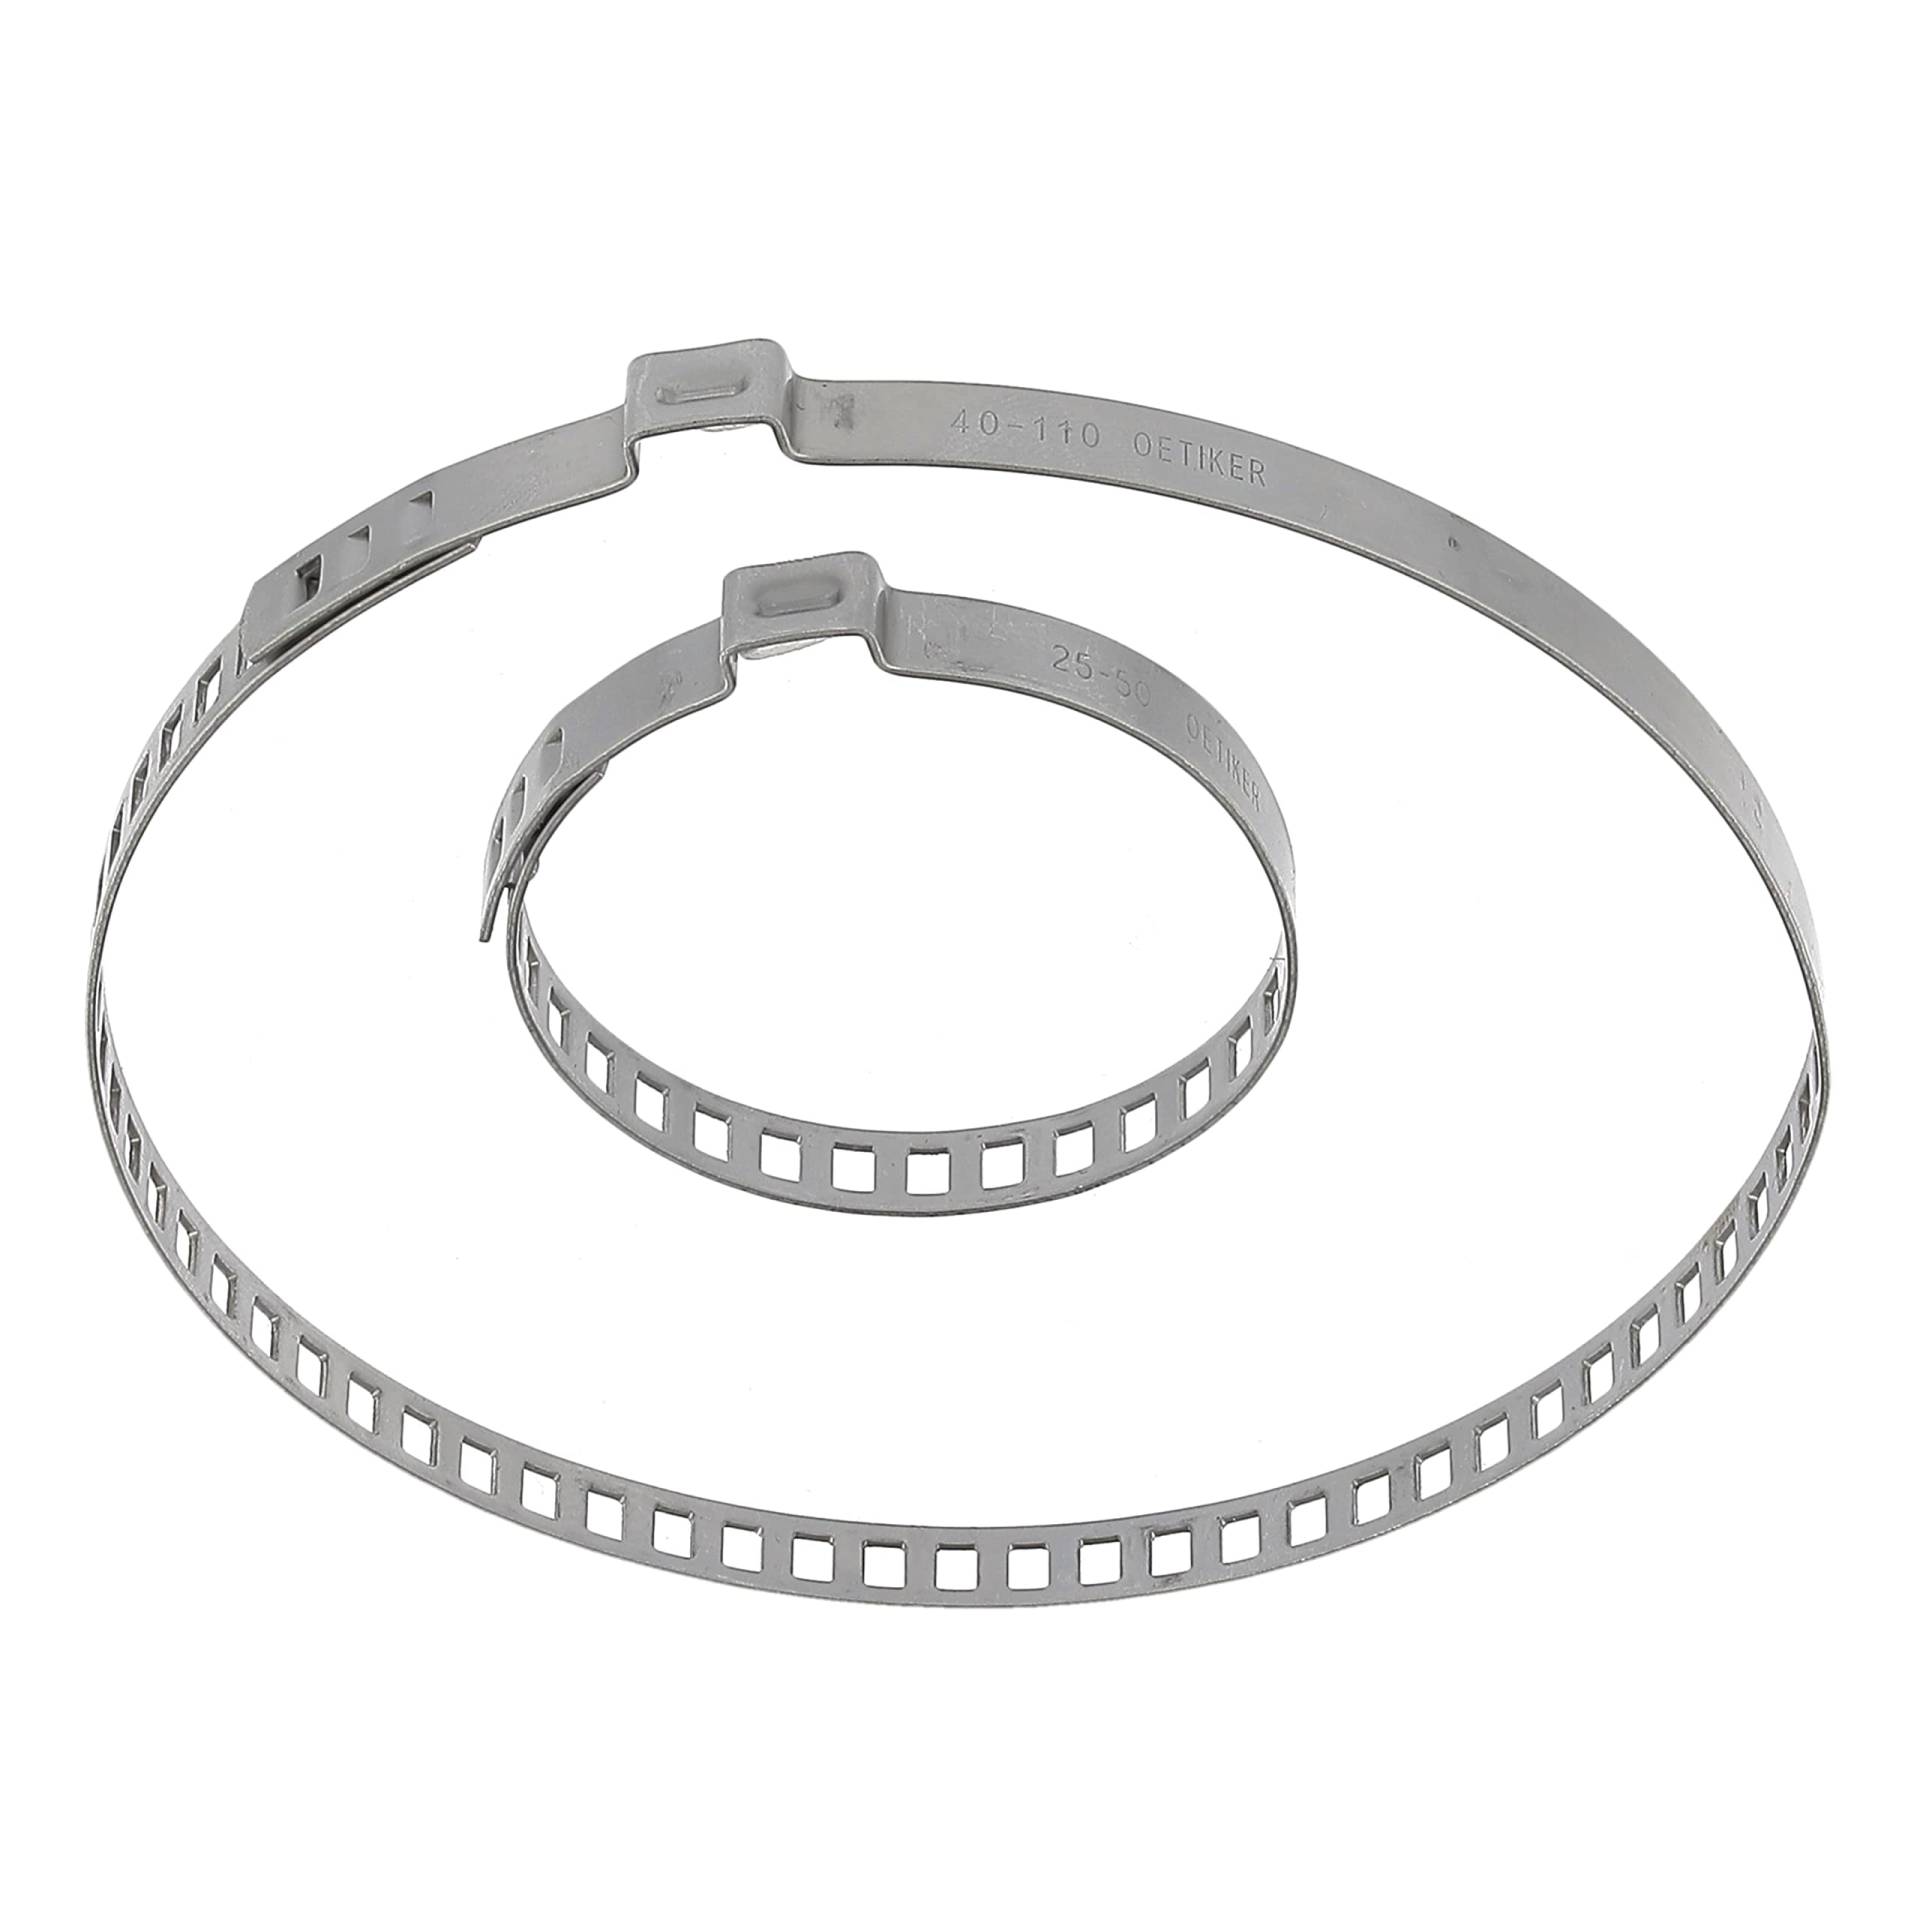 Restagraf Je de Halsbänder für Faltenbalg von Cardan, Ø 25 bis 110 mm, 2 Stück von Restagraf